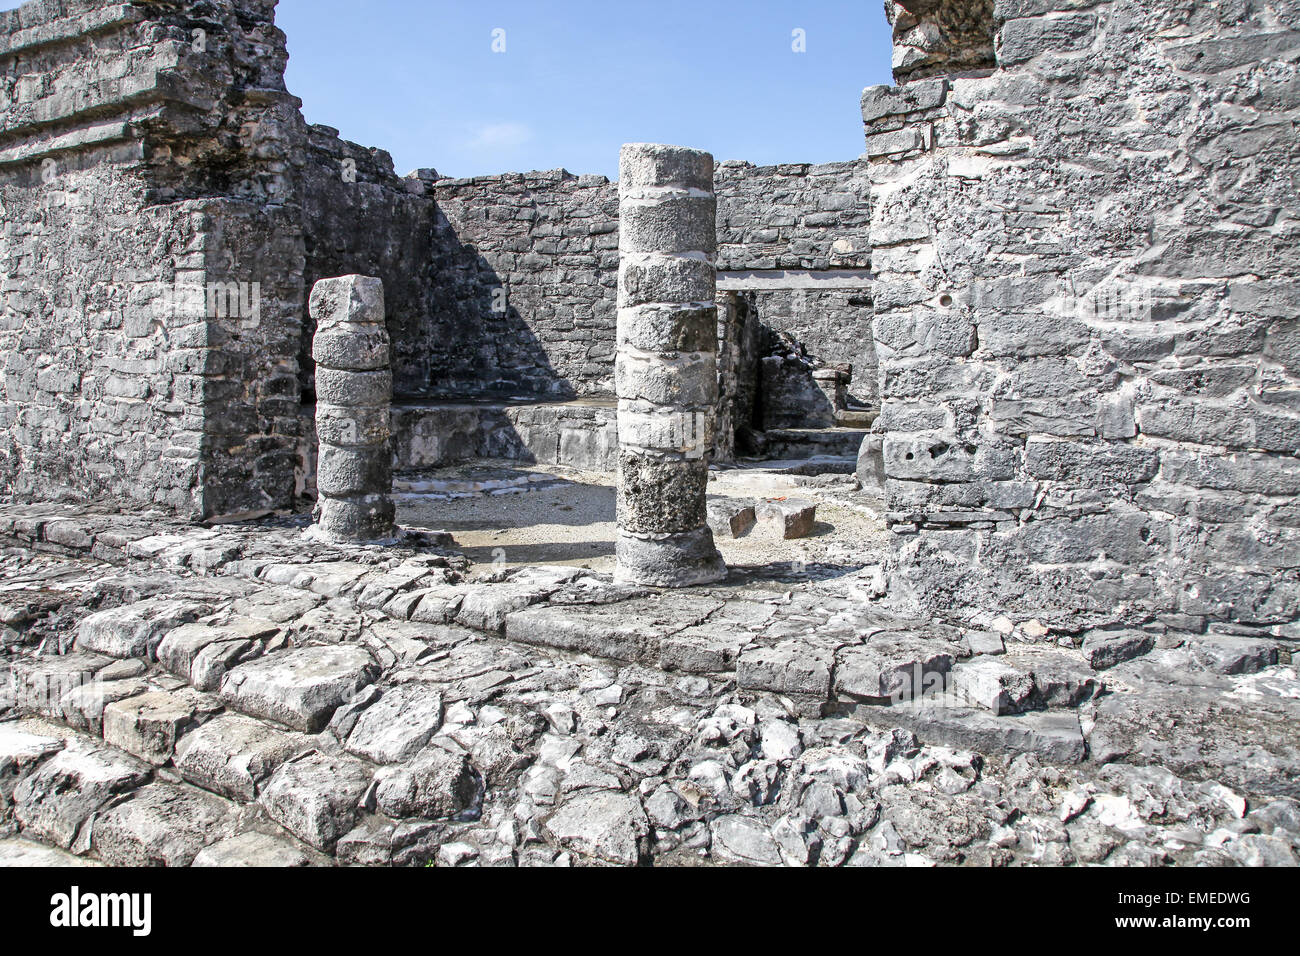 Las ruinas de Tulum, el sitio de una civilización Maya Maya precolombina ciudad amurallada de la península de Yucatán, Quintana Roo, México. Foto de stock